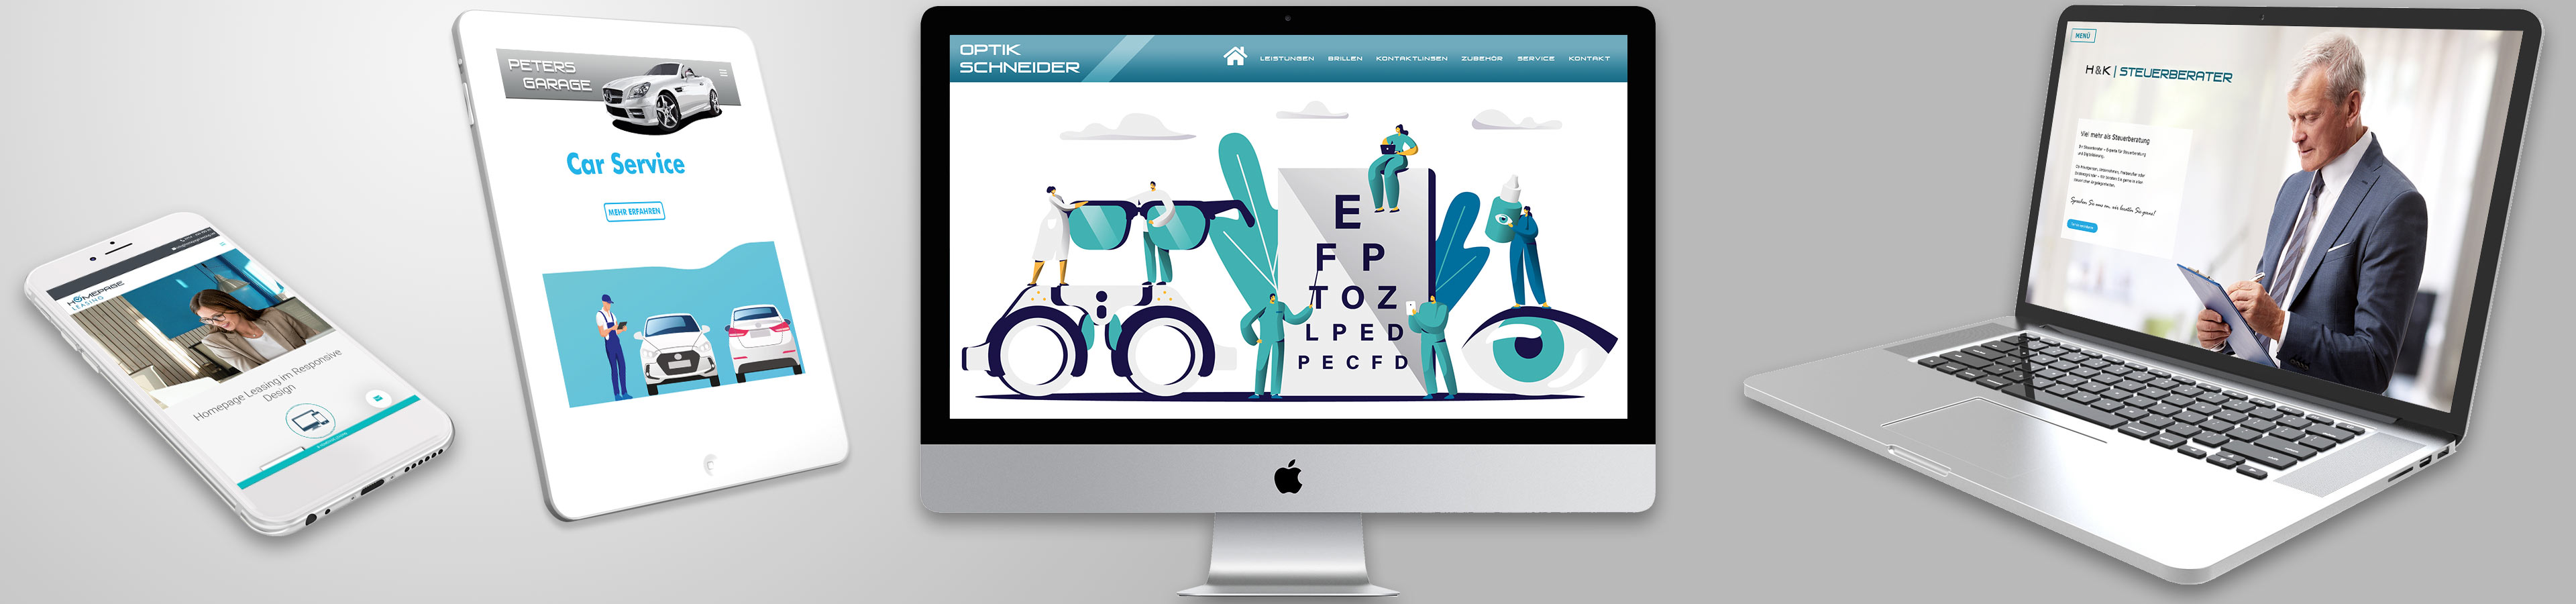 Homepage für Augenoptiker erstellen - Background